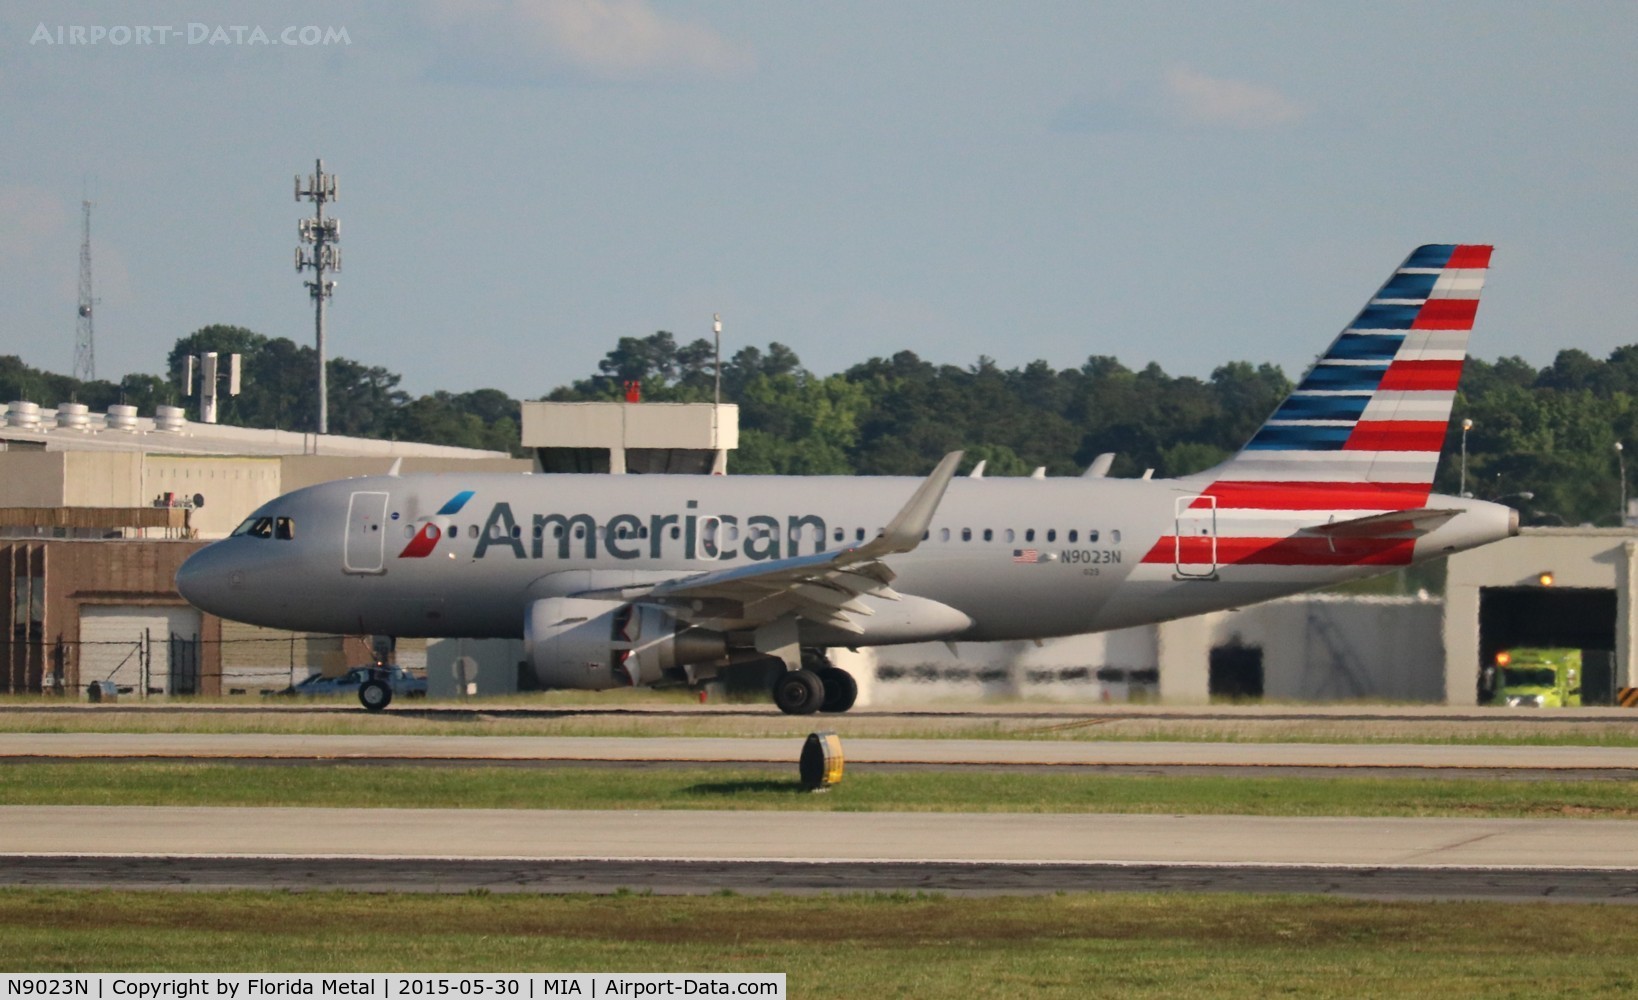 N9023N, 2014 Airbus A319-115 C/N 6349, American